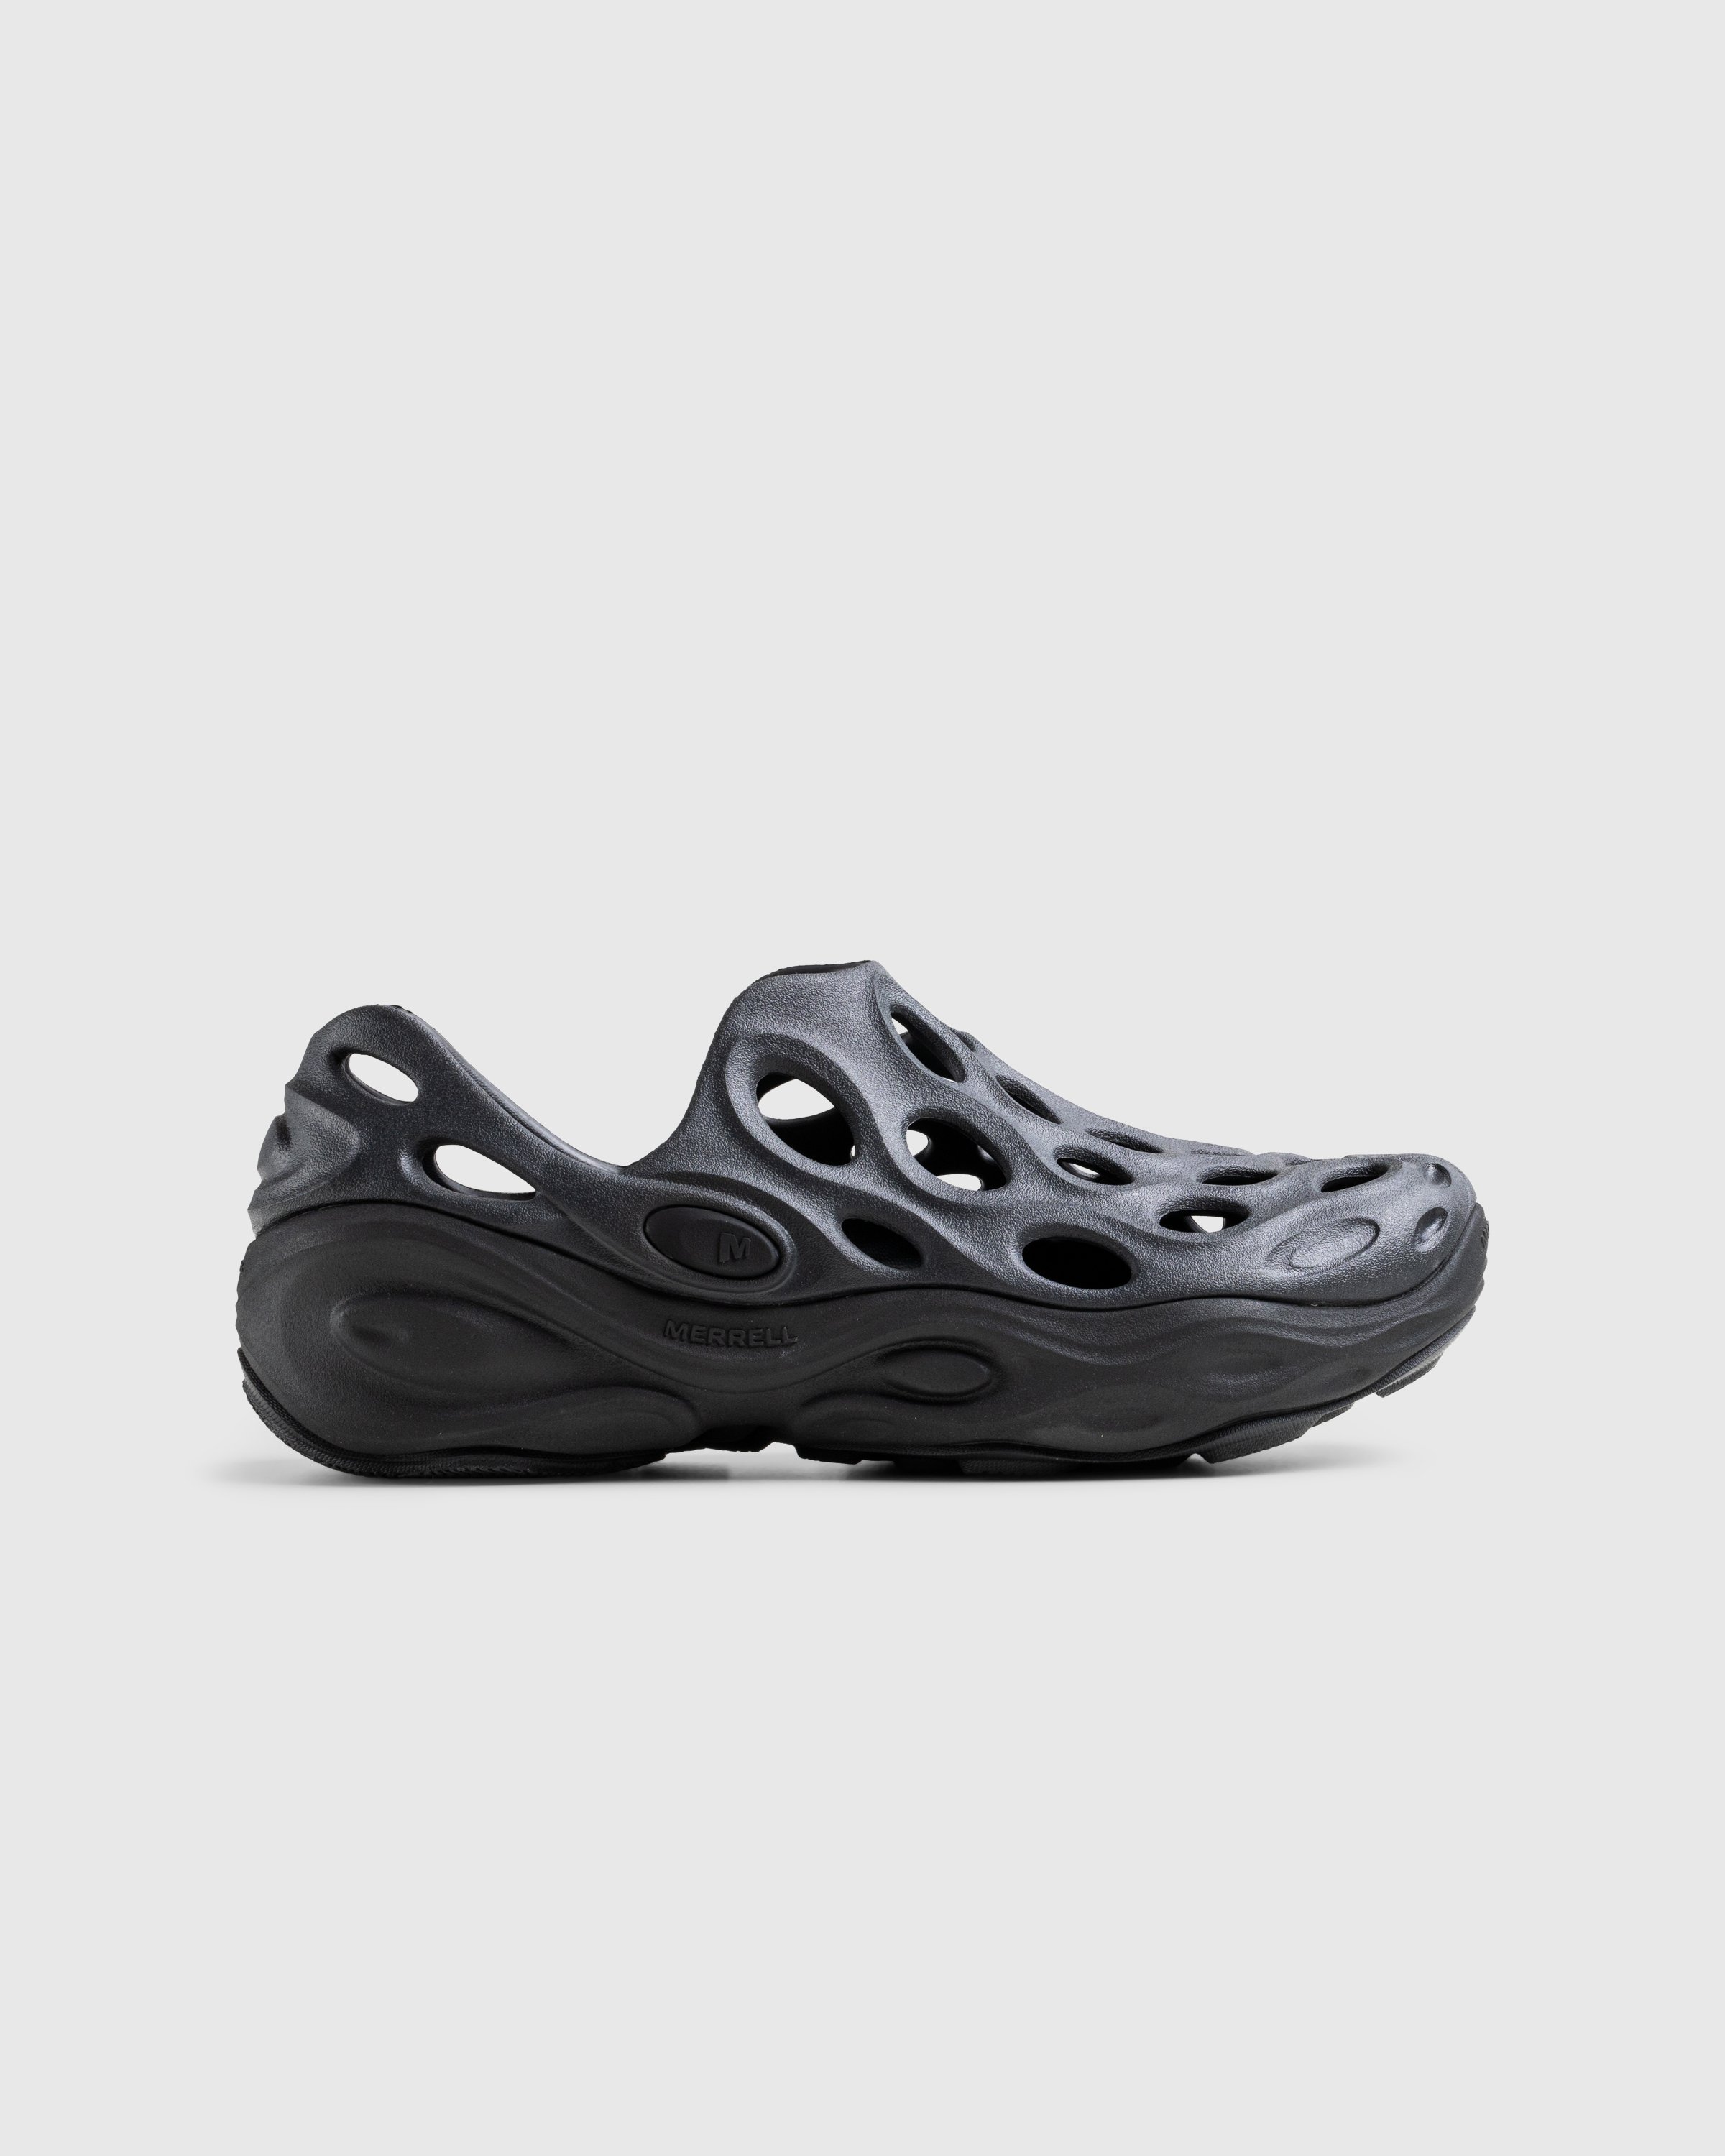 Merrell - HYDRO NEXT GEN MOC SE/TRIPLE BLACK - Footwear - Black - Image 1